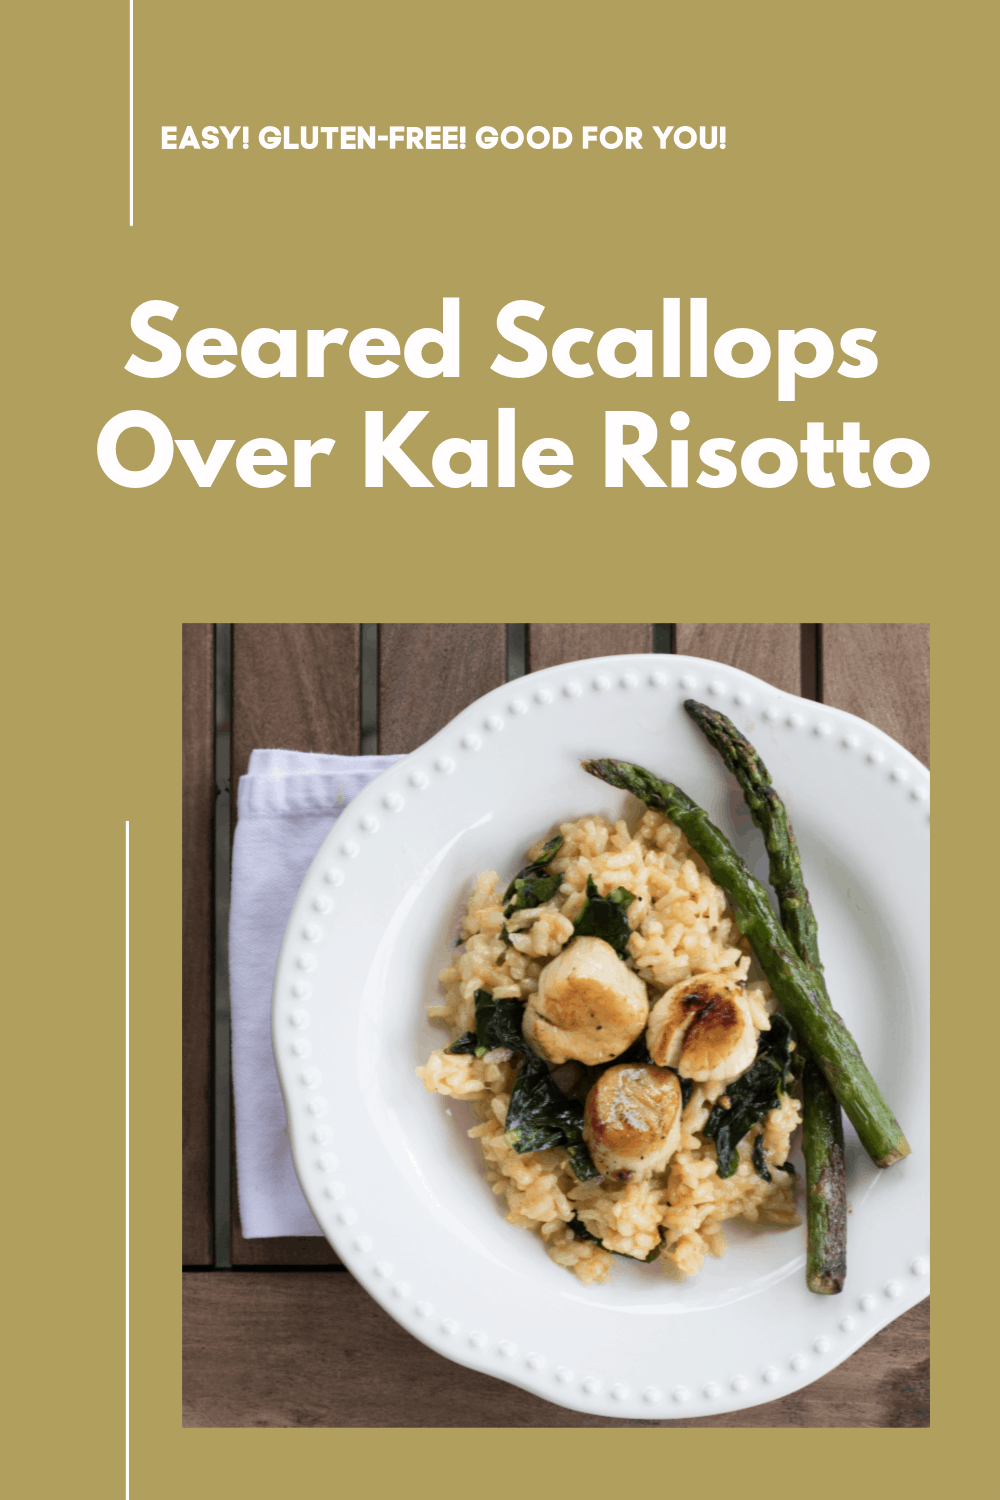 Delicious Seared Scallops Over Kale Risotto